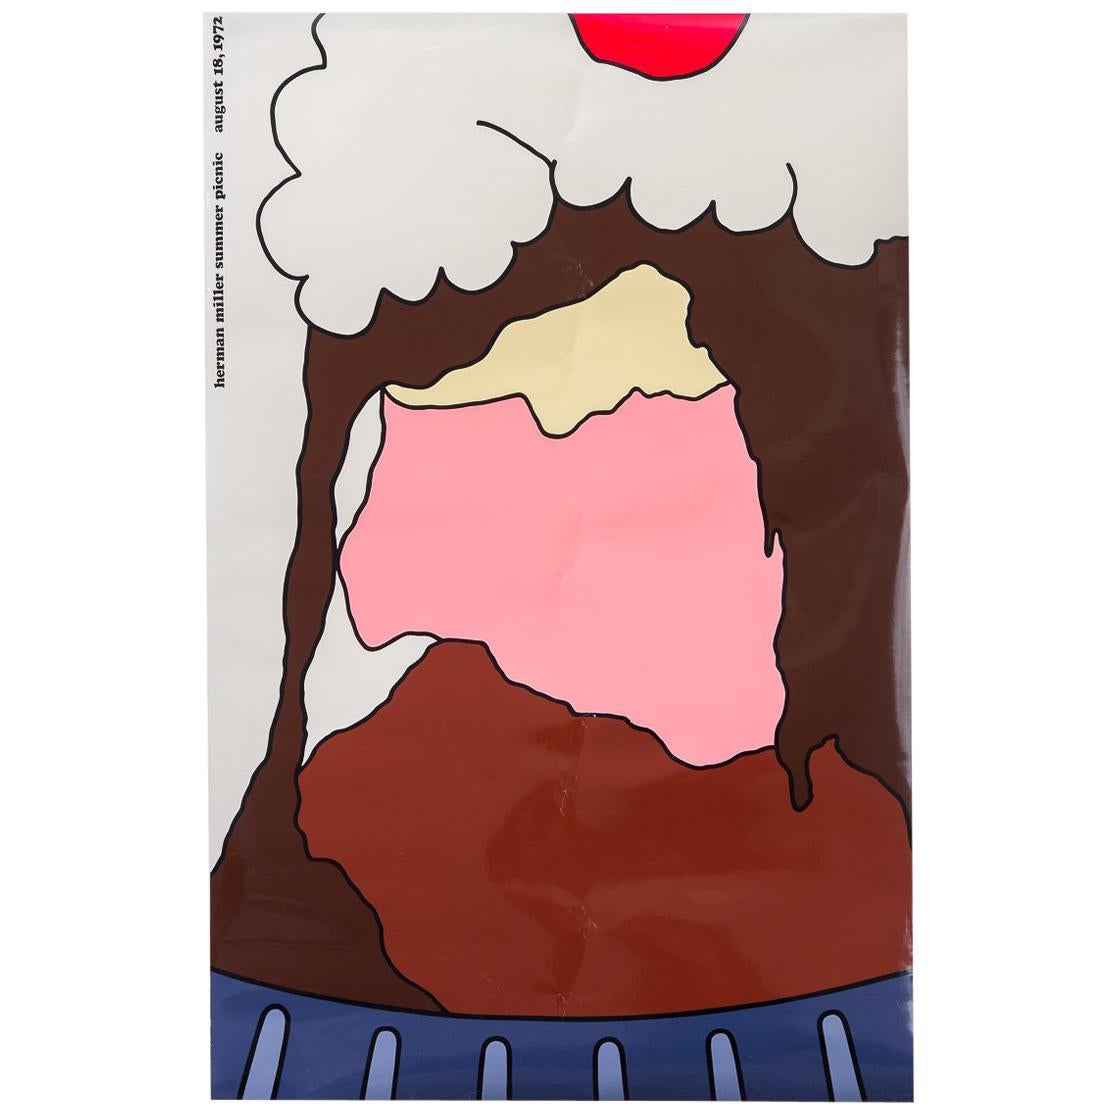 Herman Miller Summer Picnic Ice Cream Sundae Poster by Stephen Frykholm